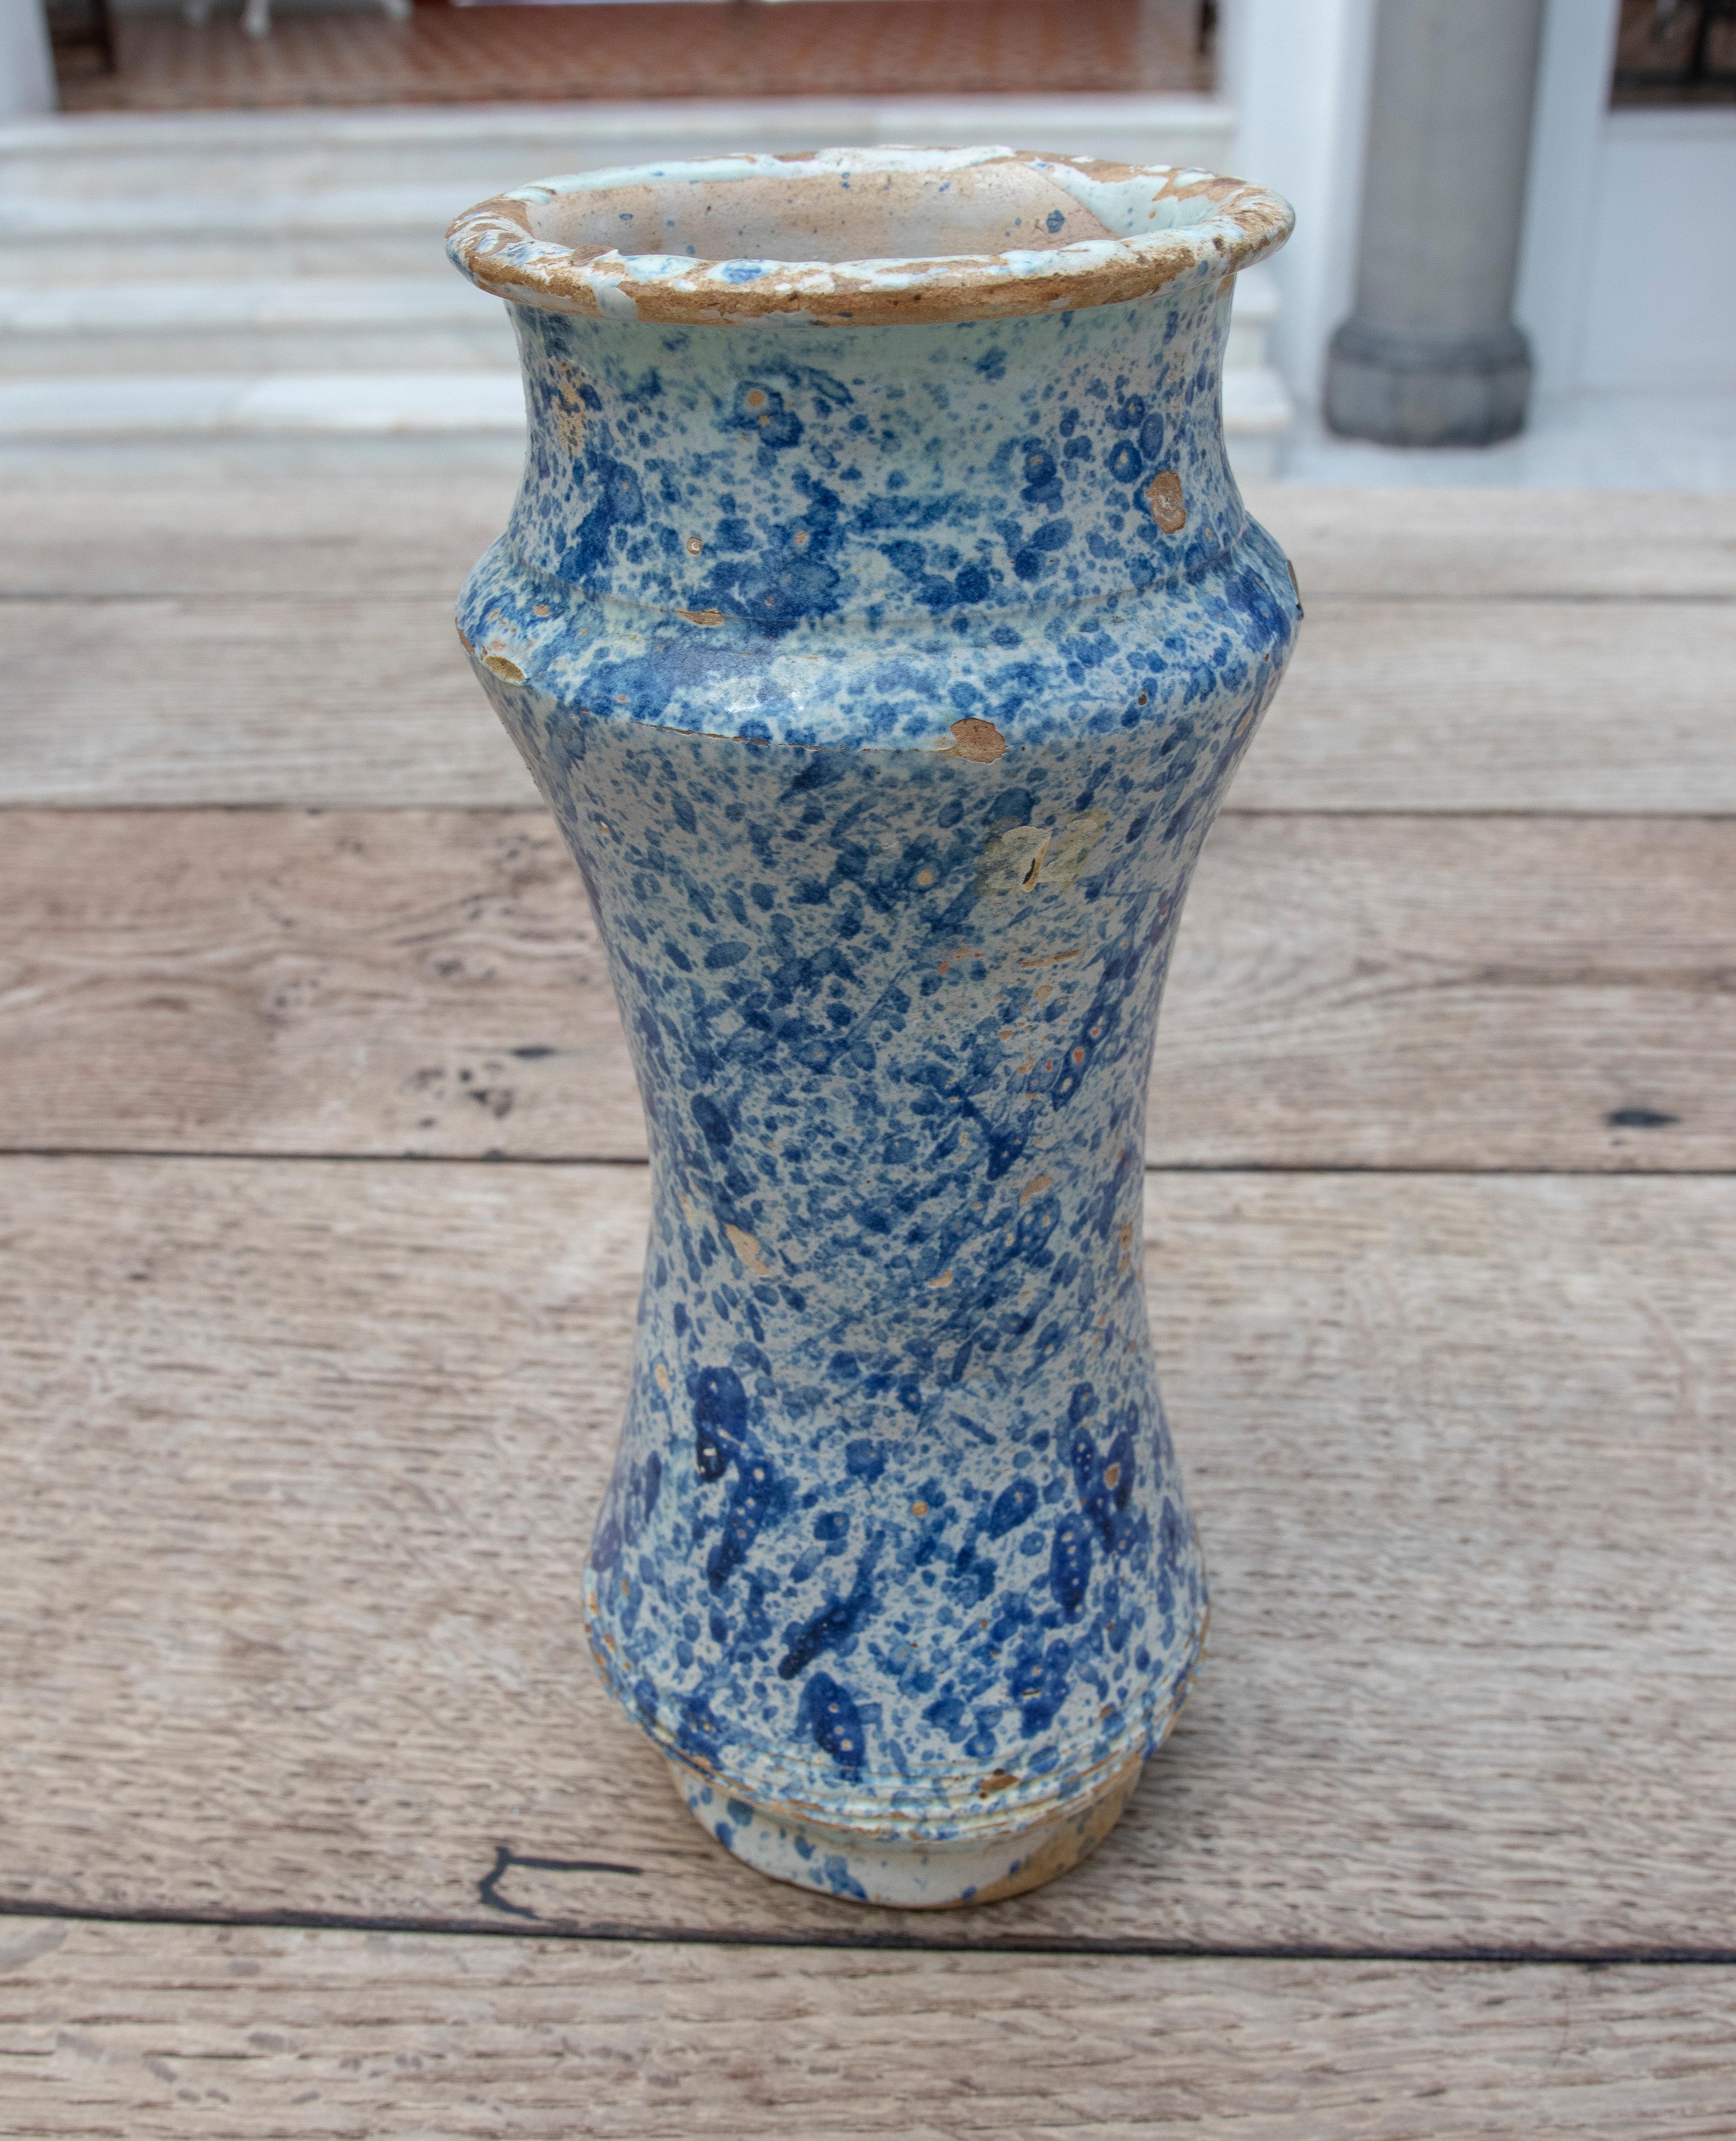 Jarre à pharmacie espagnole Talavera du 17ème siècle en céramique émaillée bleue.